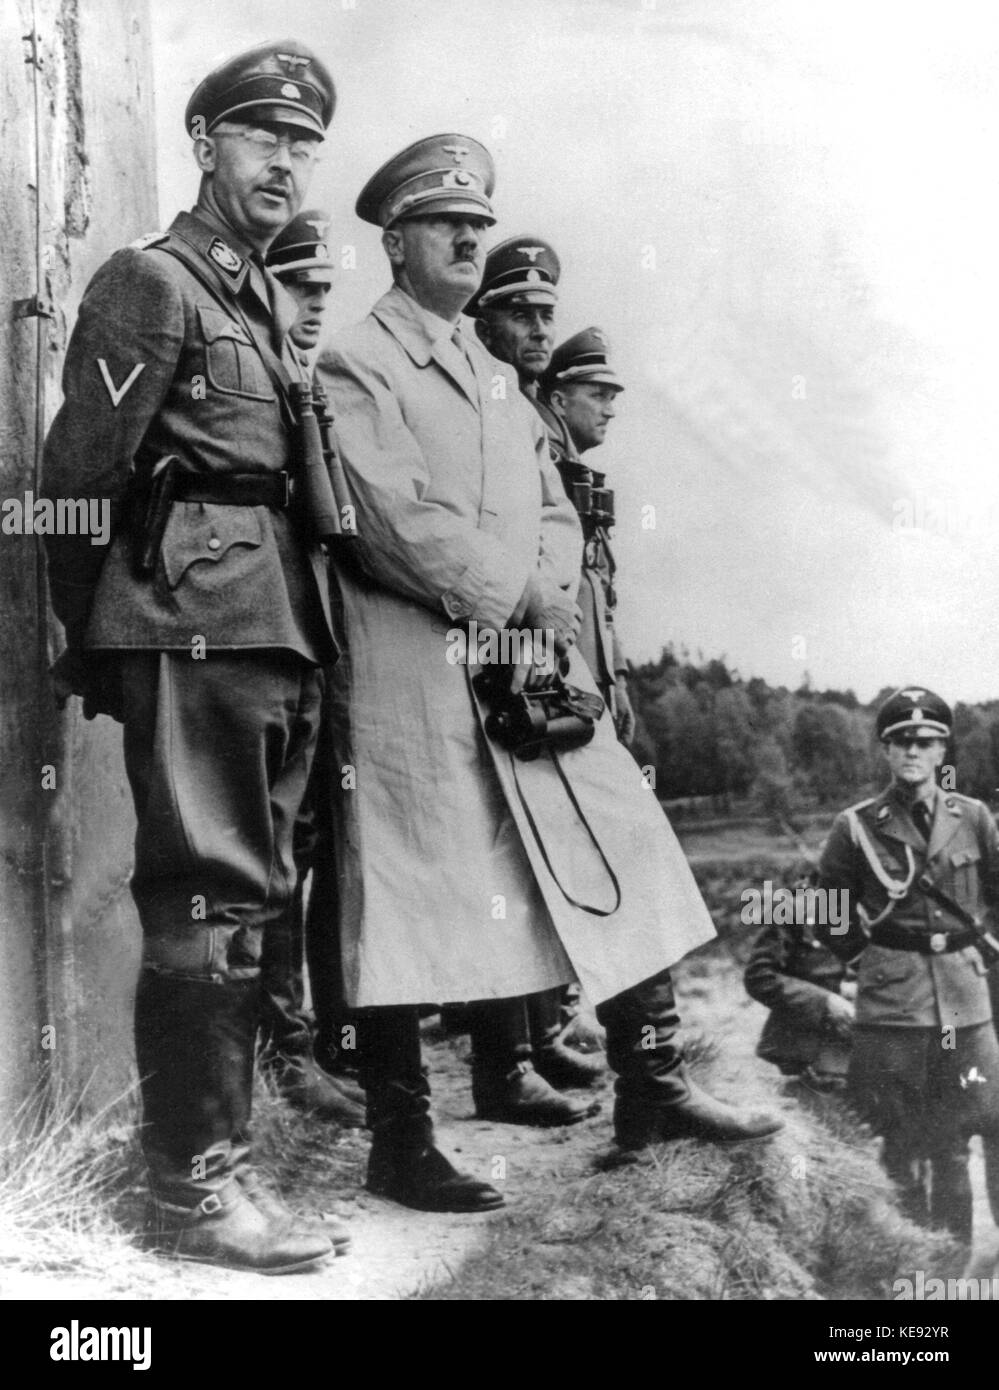 Reichskanzler und Ns-Führer Adolf Hitler (m) und reichsführer der SS Heinrich Himmler (L) beachten Sie ein Manöver. Undatiert. | Verwendung weltweit Stockfoto